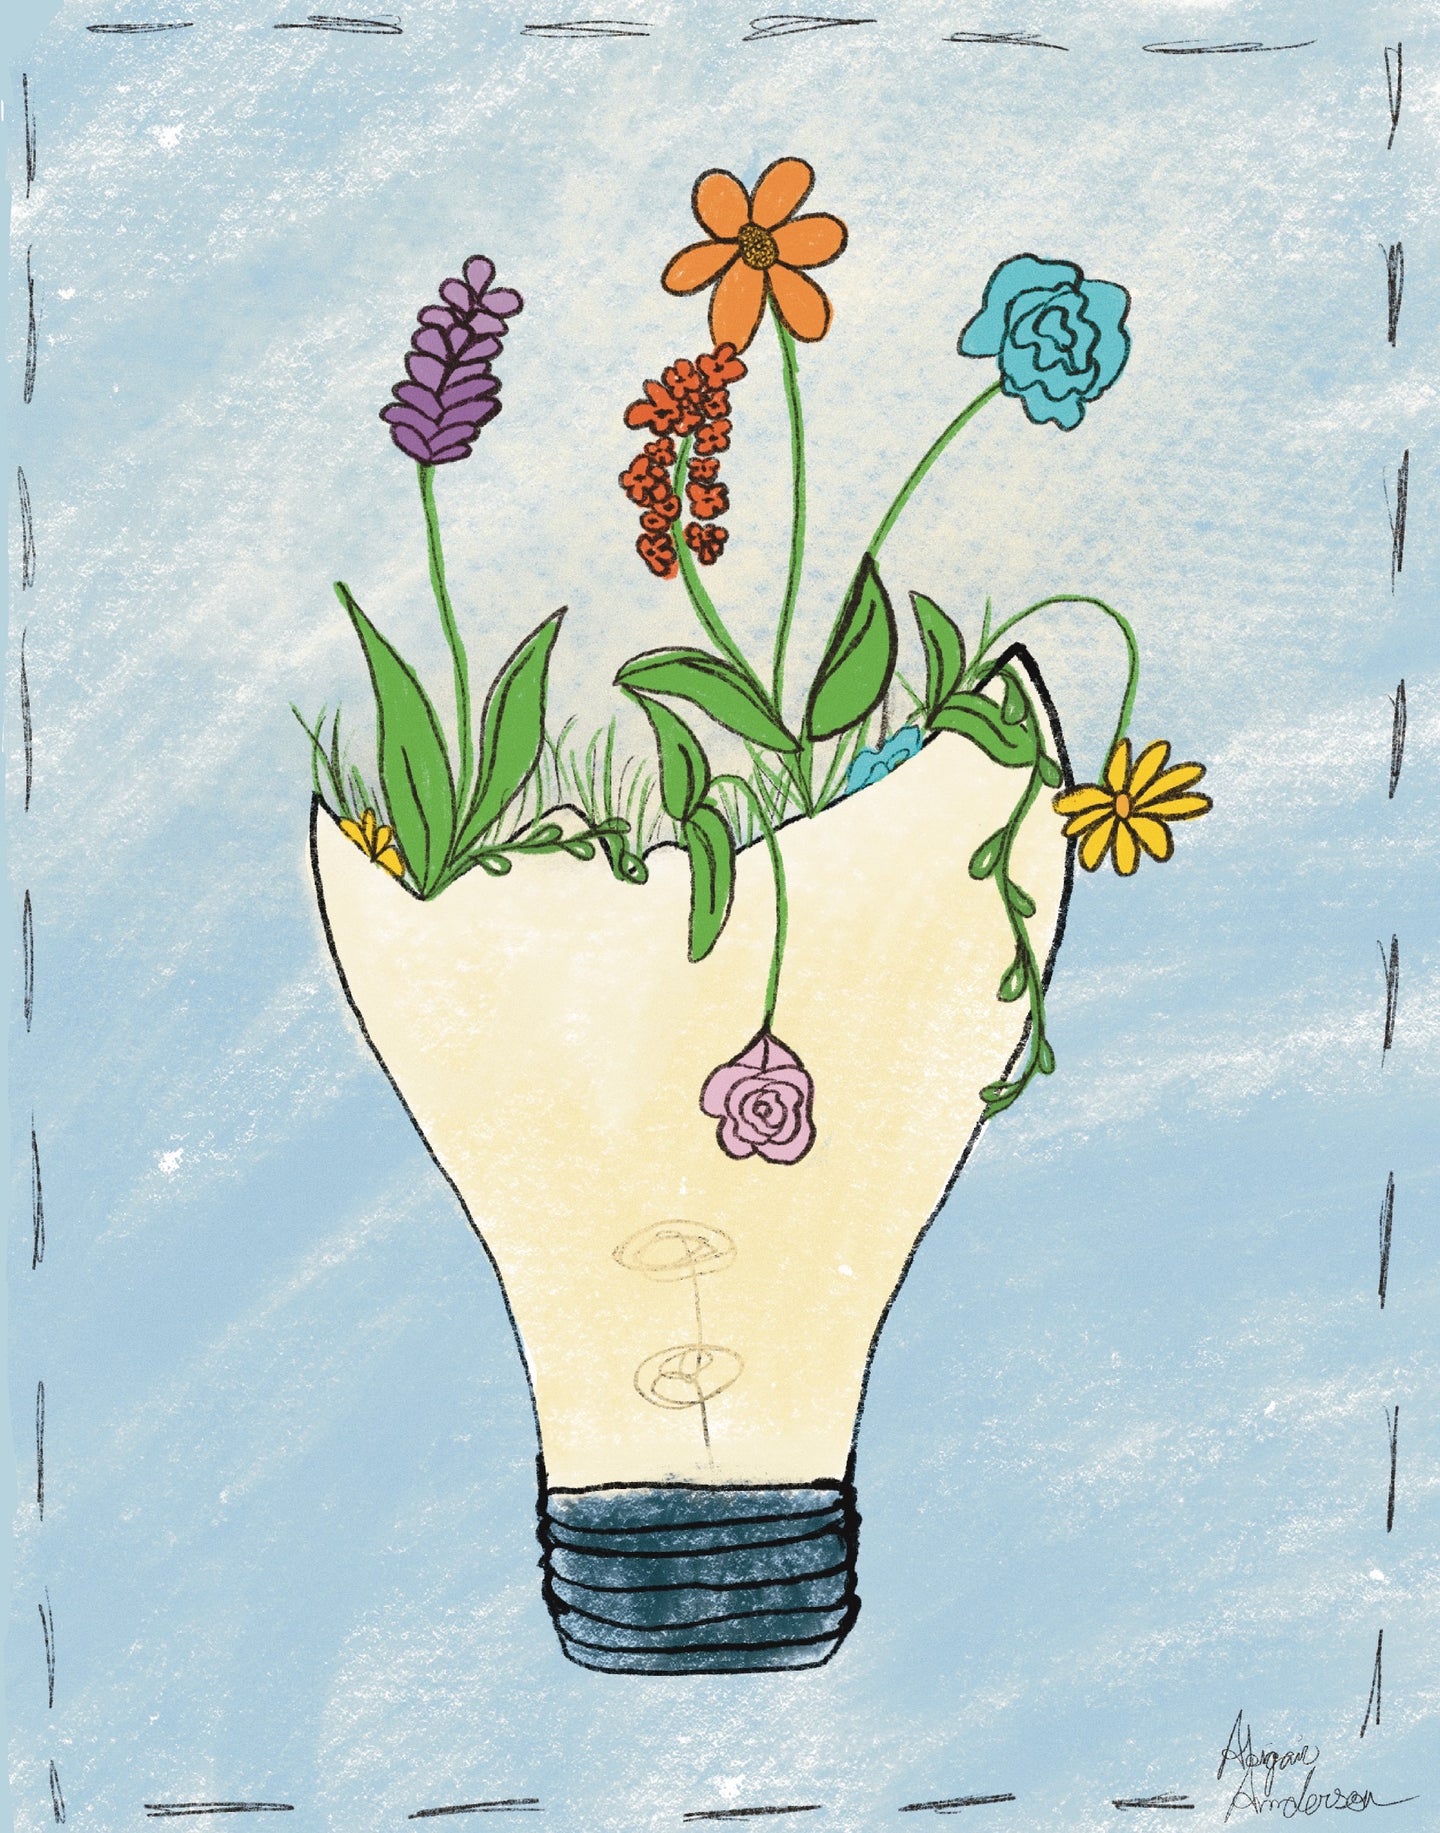 Ideas in bloom